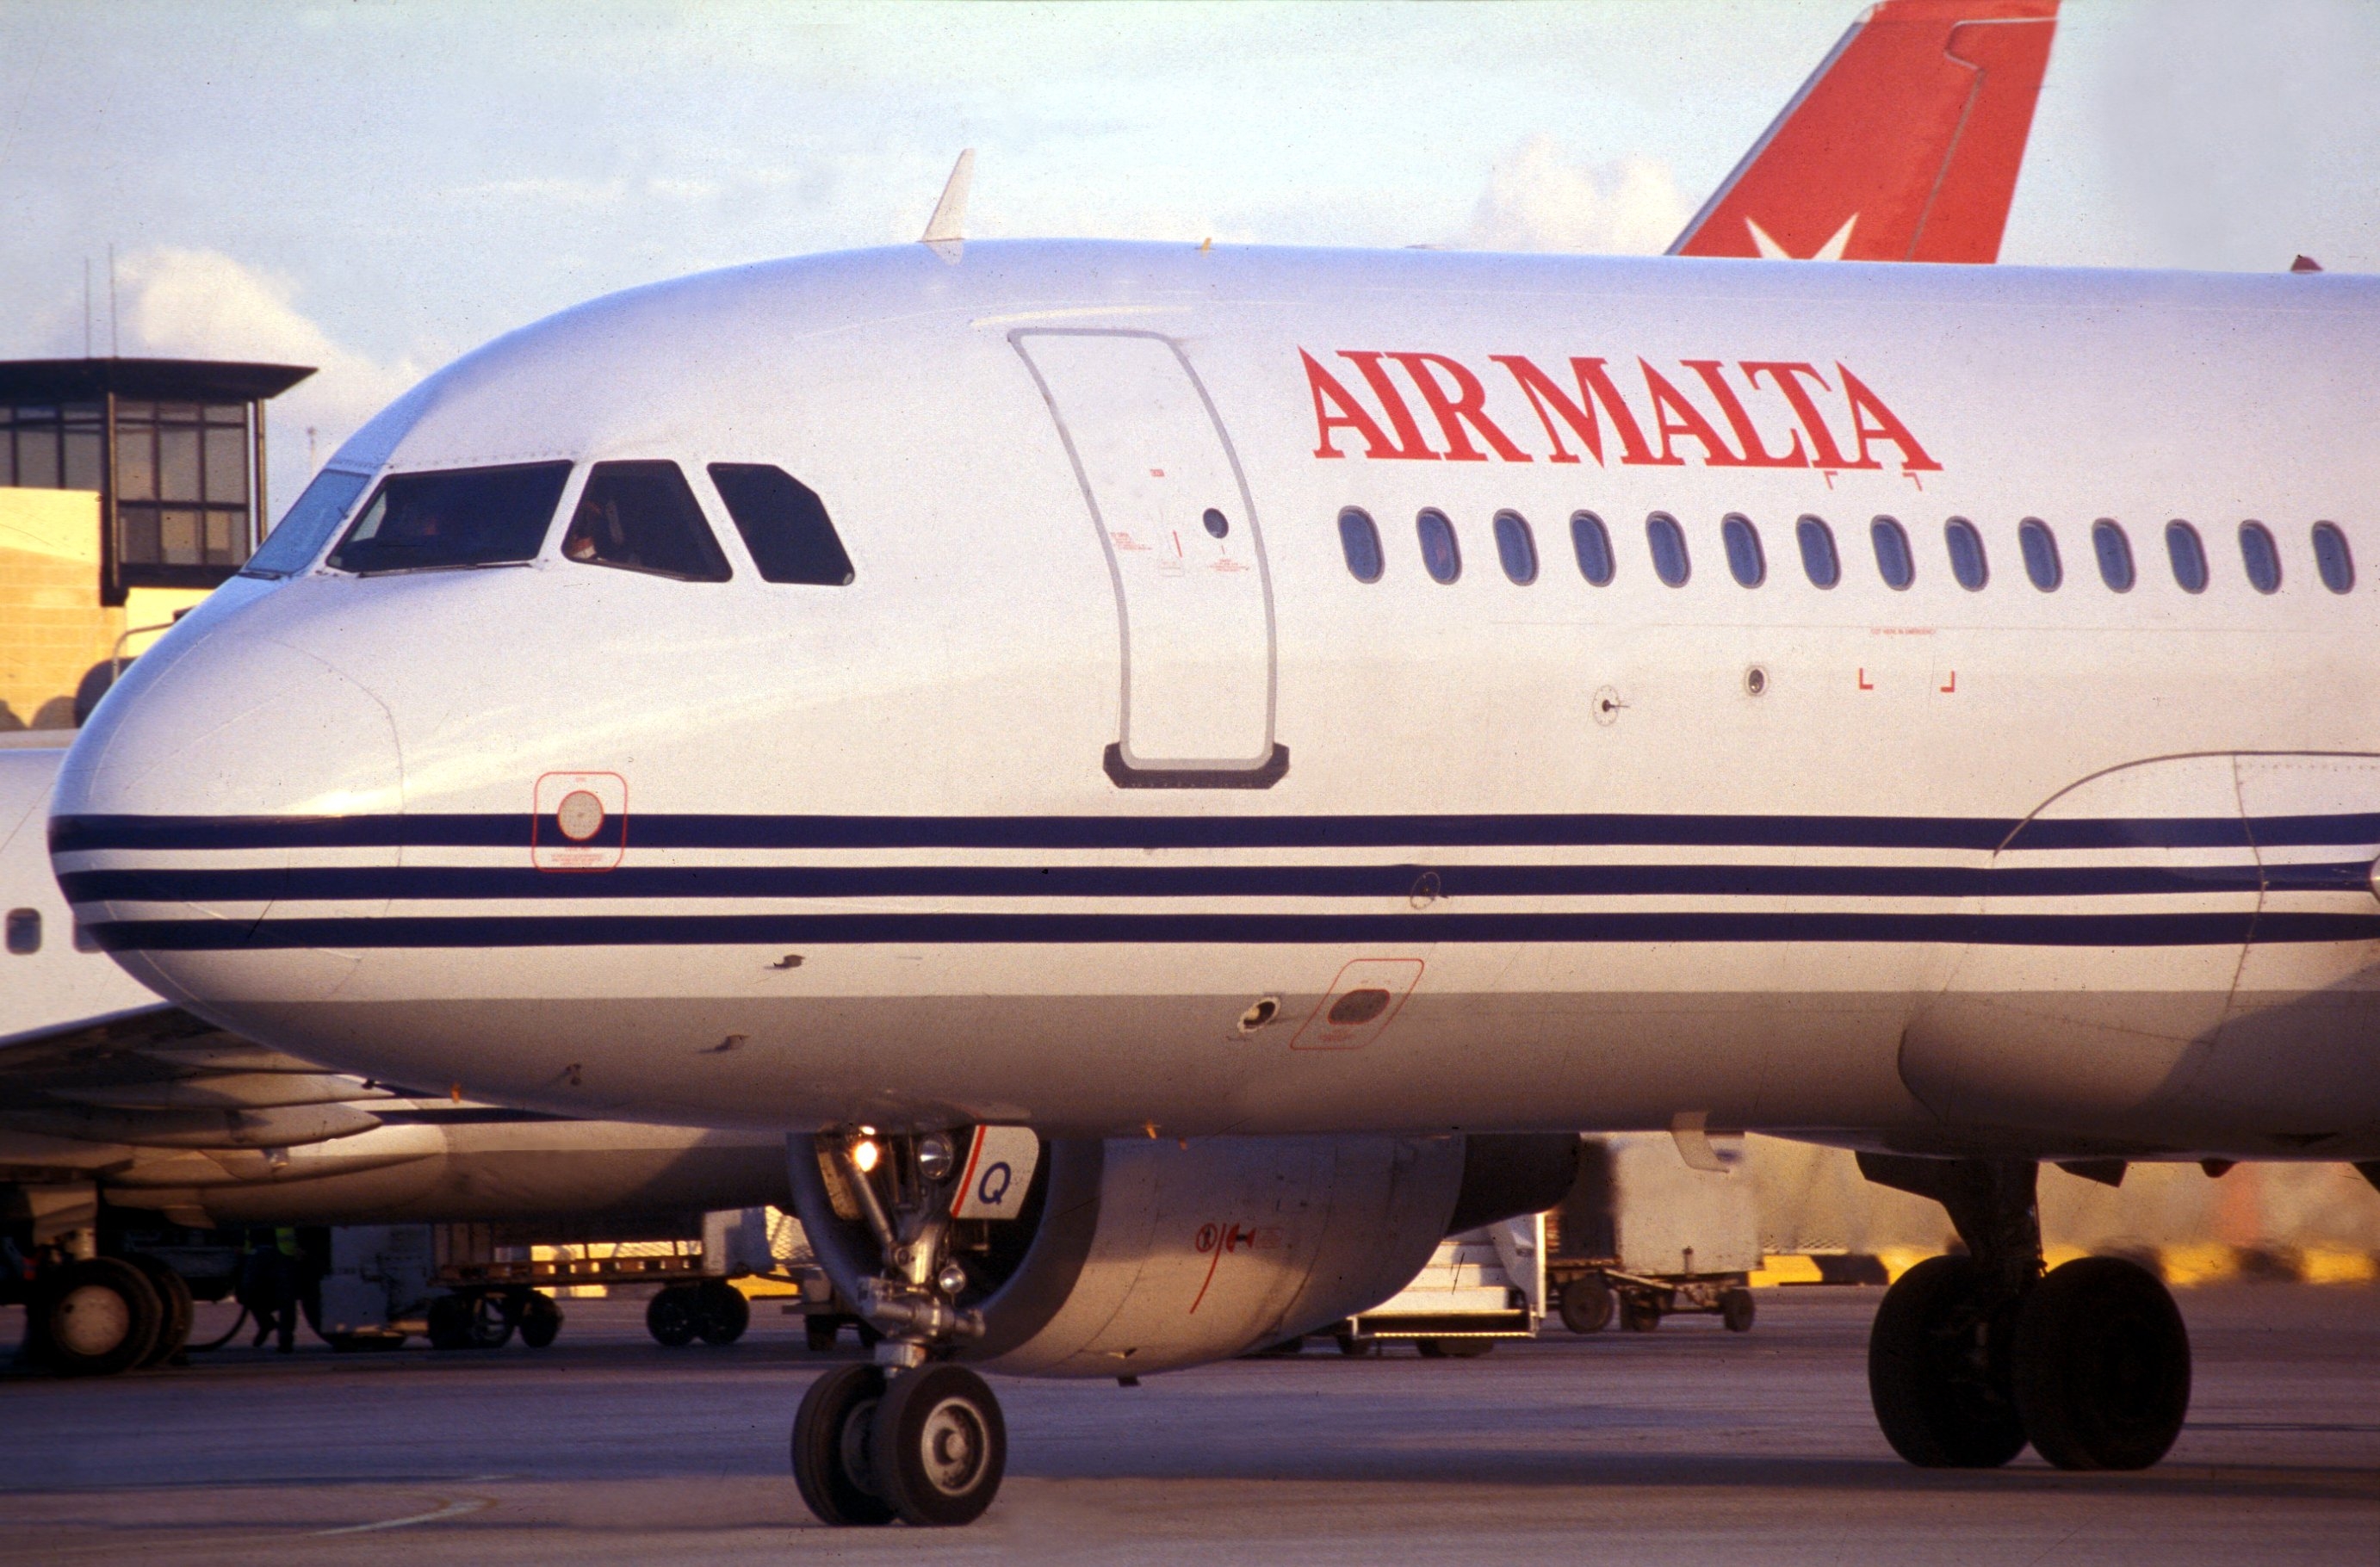 Air Malta ripristina i voli per Bengasi dal 29 maggio, in ipotesi anche un servizio cargo